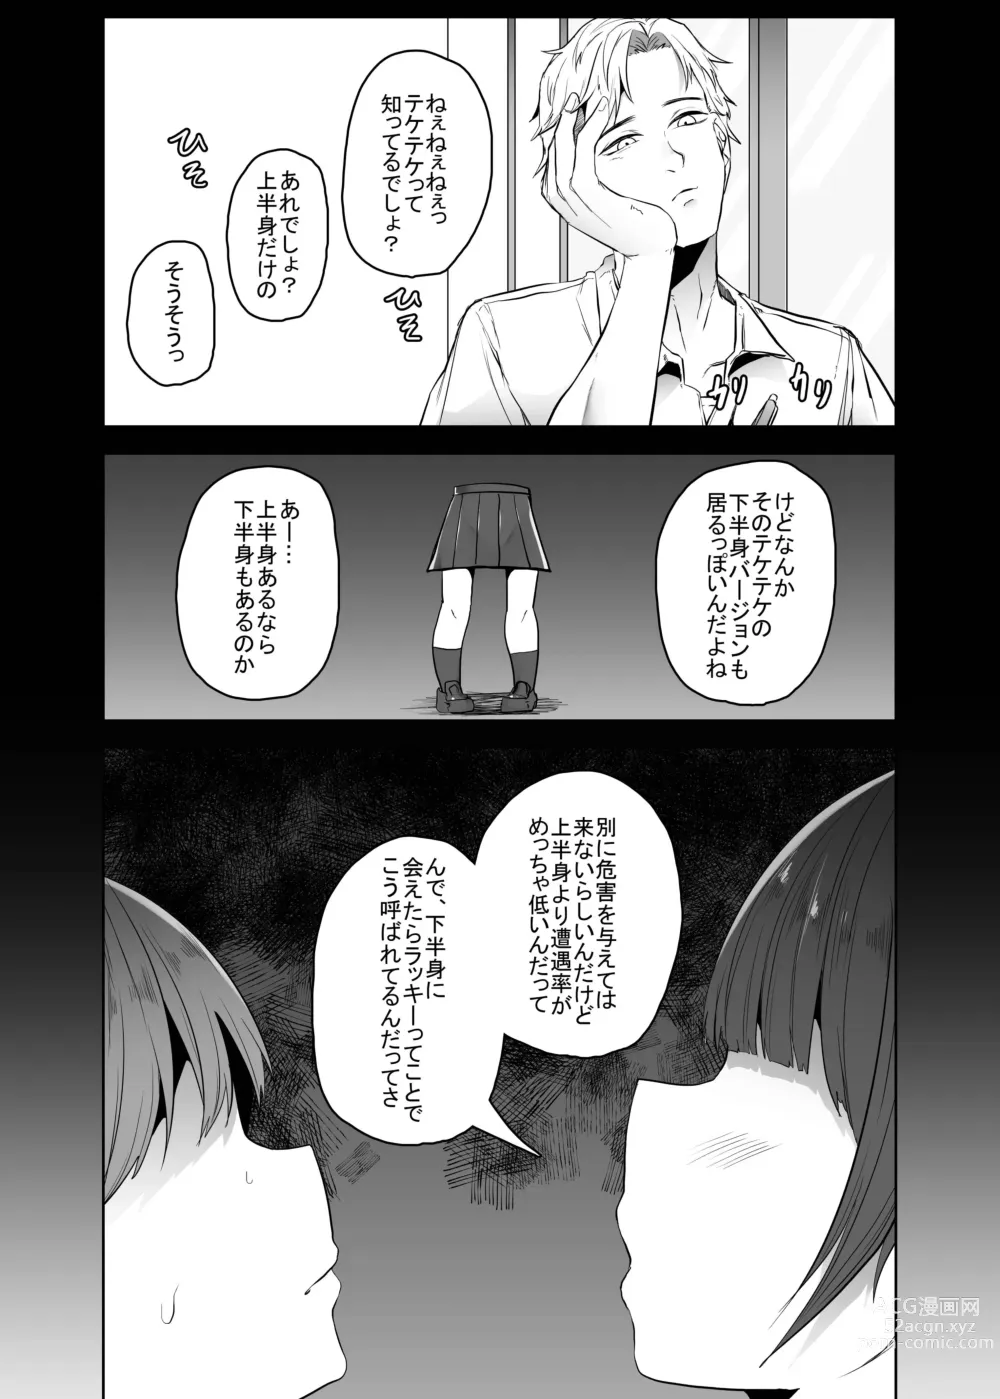 Page 7 of doujinshi Teke Teke SSR